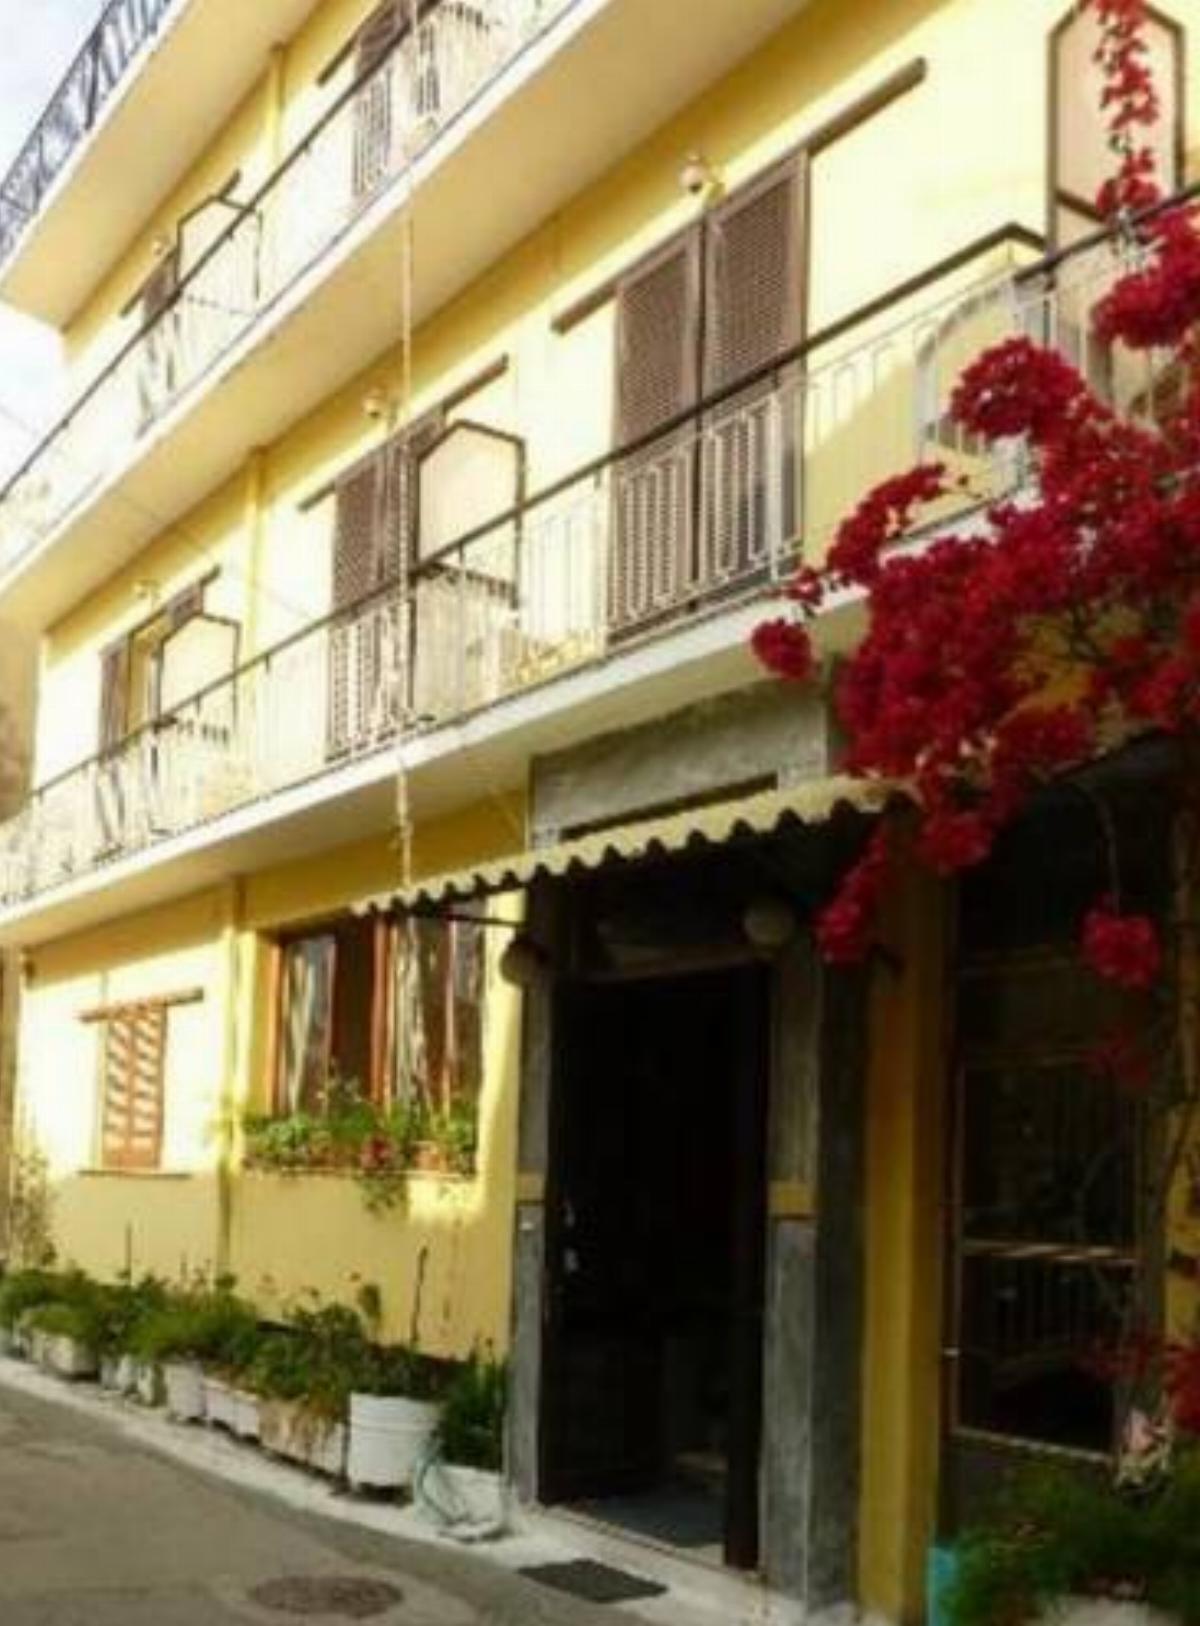 Europe Hotel Hotel Corfu Town Greece